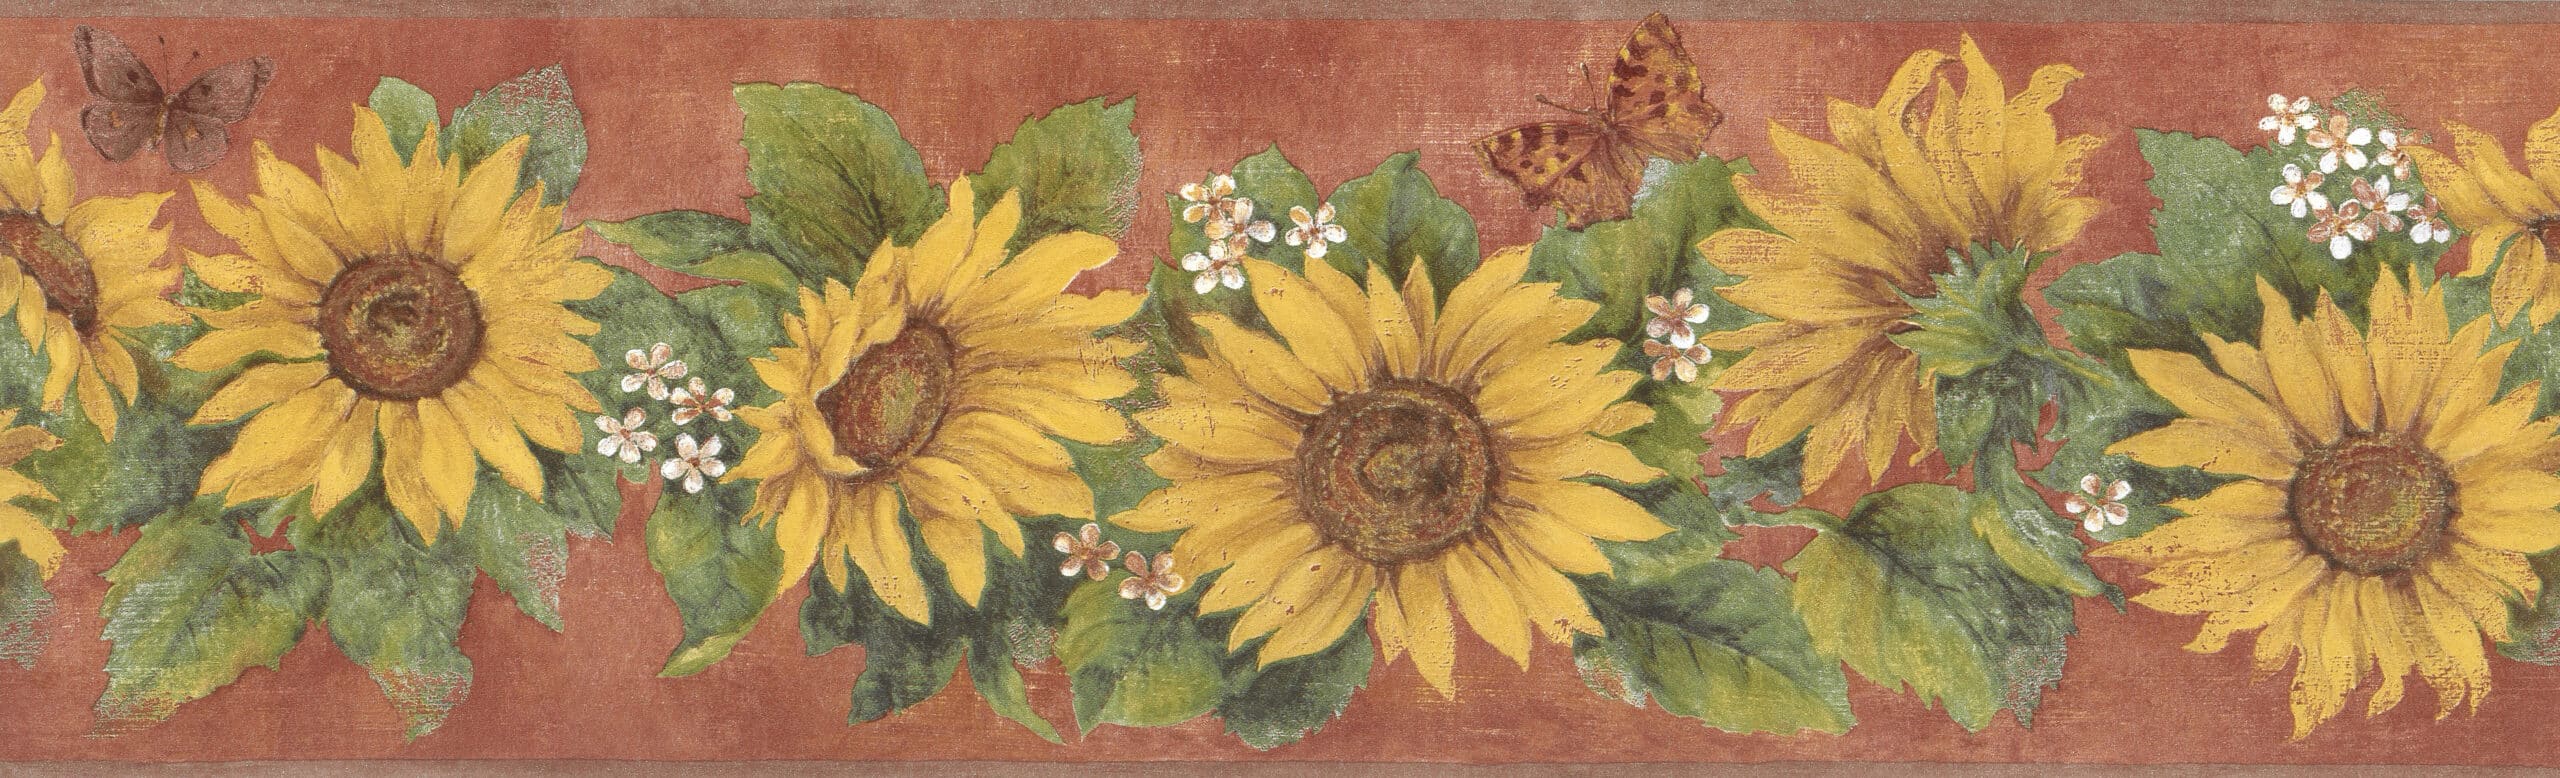 sunflower border wallpaper